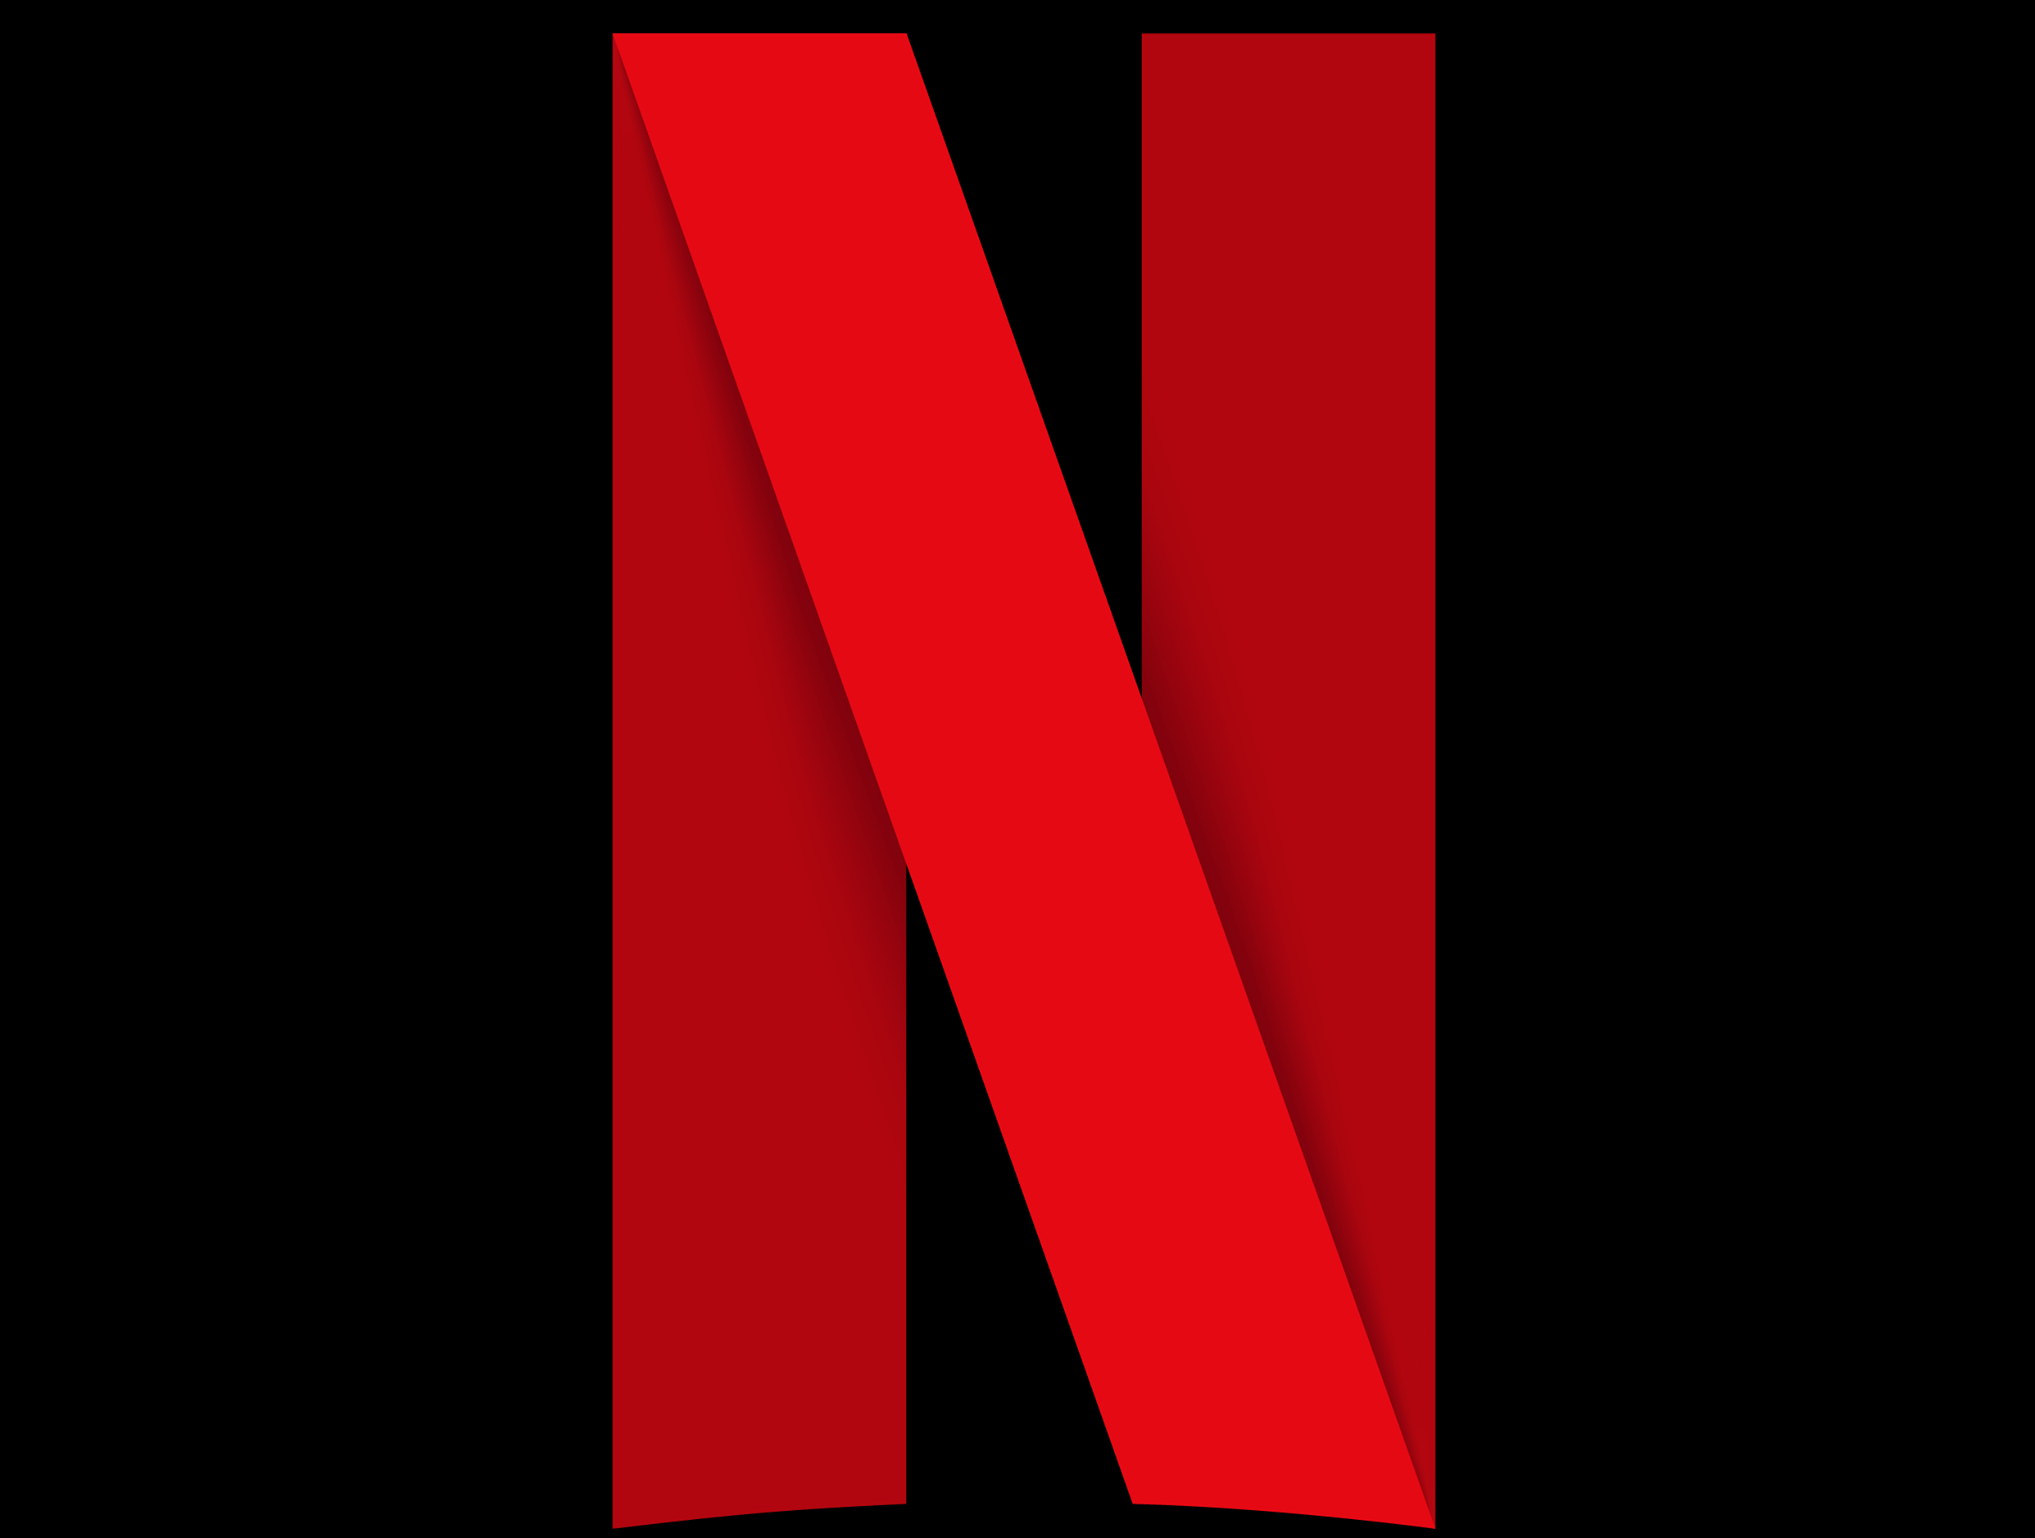 Acțiunile Netflix au scăzut, iar compania pierde utilizatori. Care este cauza